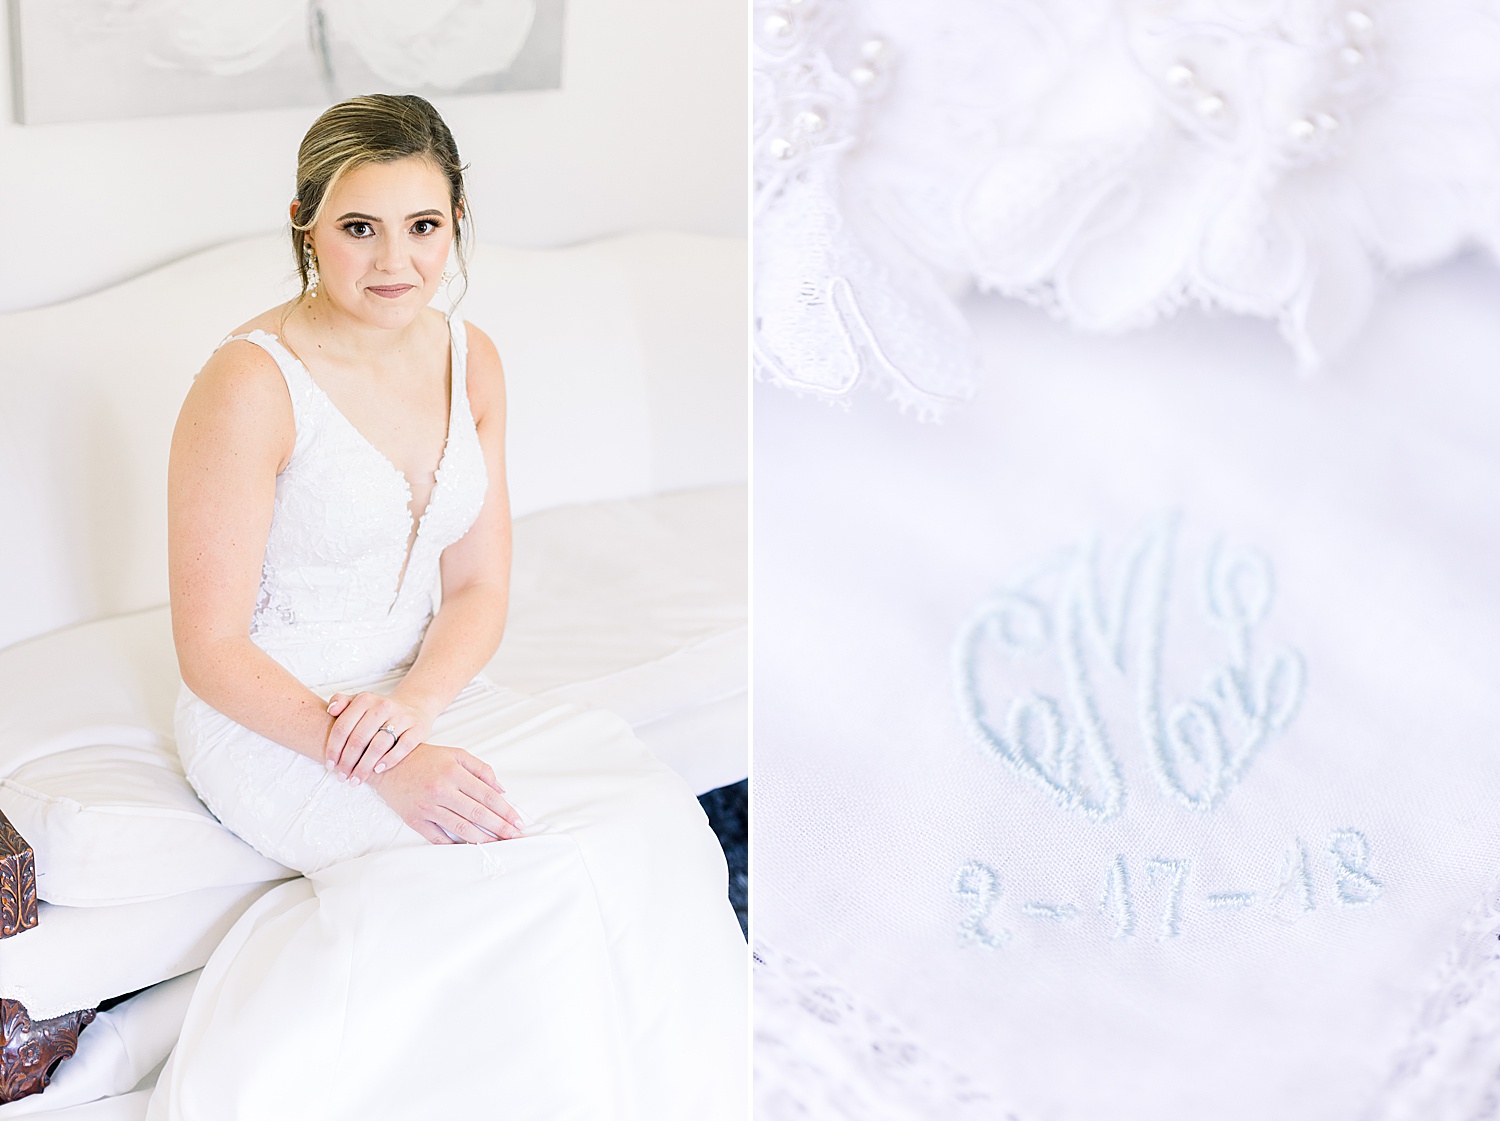 Alabama Bride + Bridal details